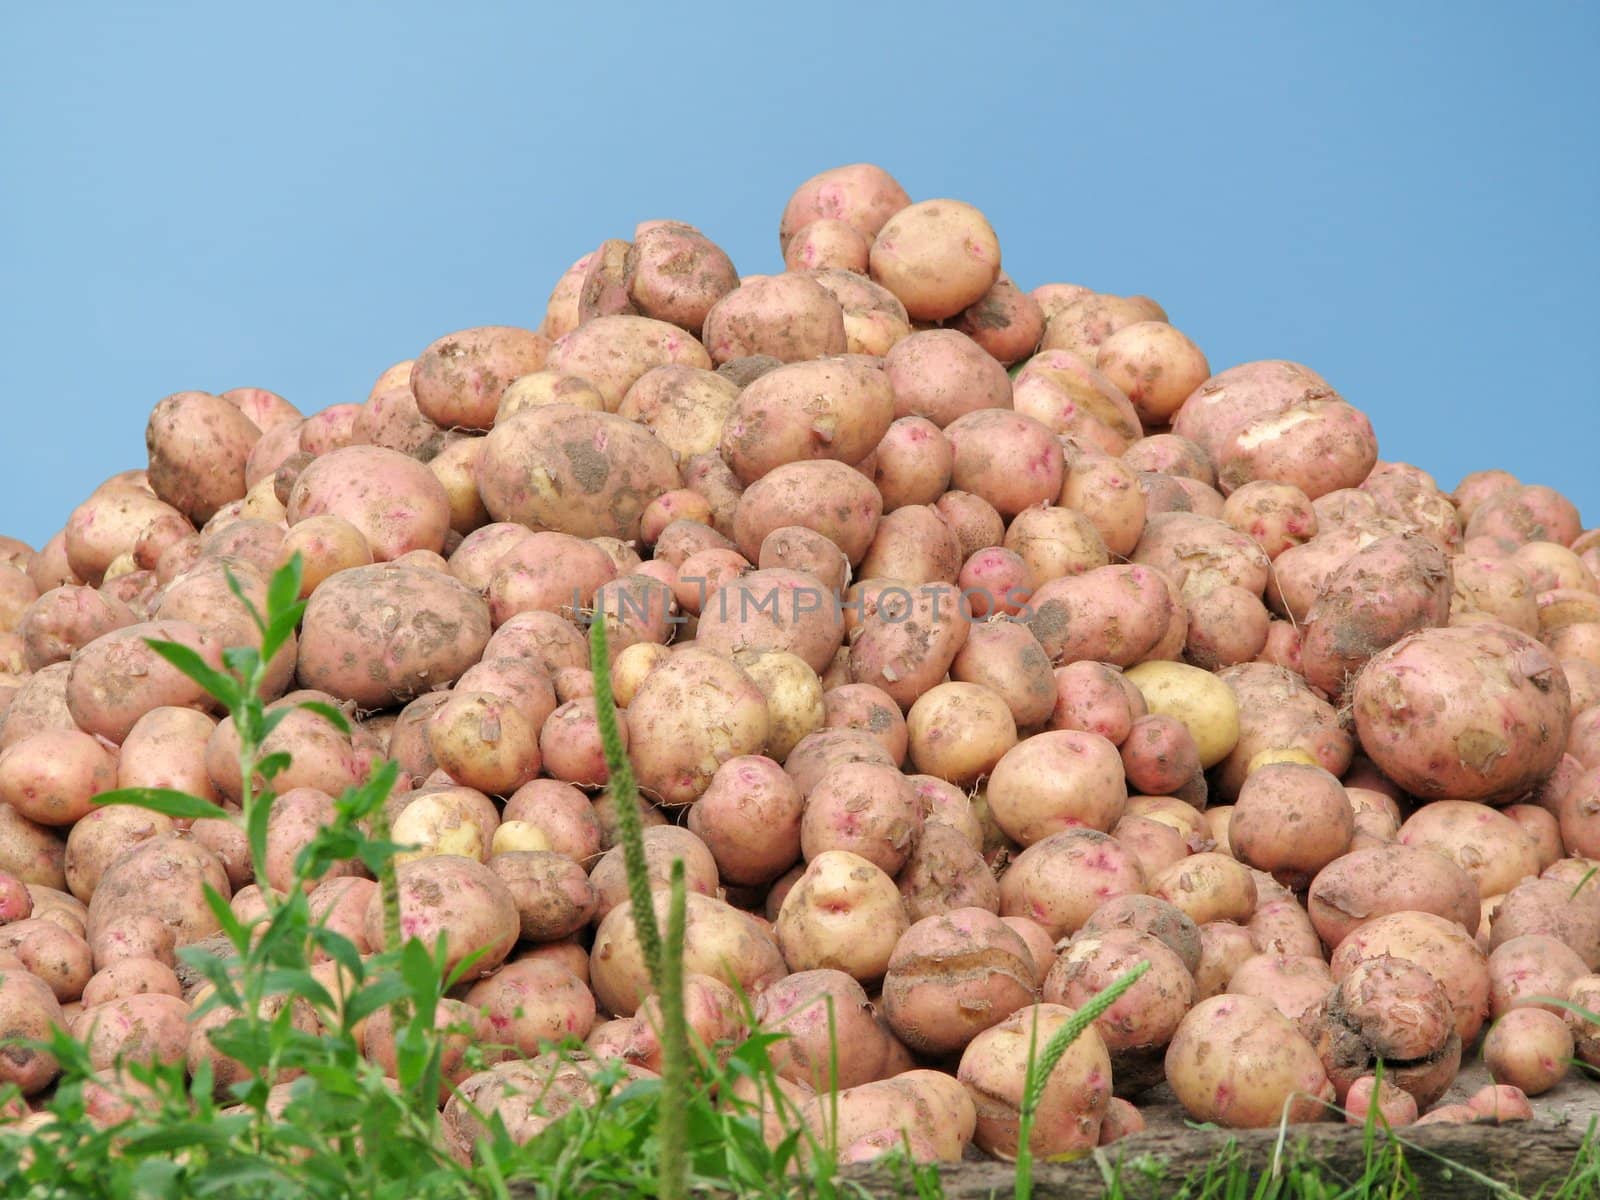 Mountain of a potato by Svetovid